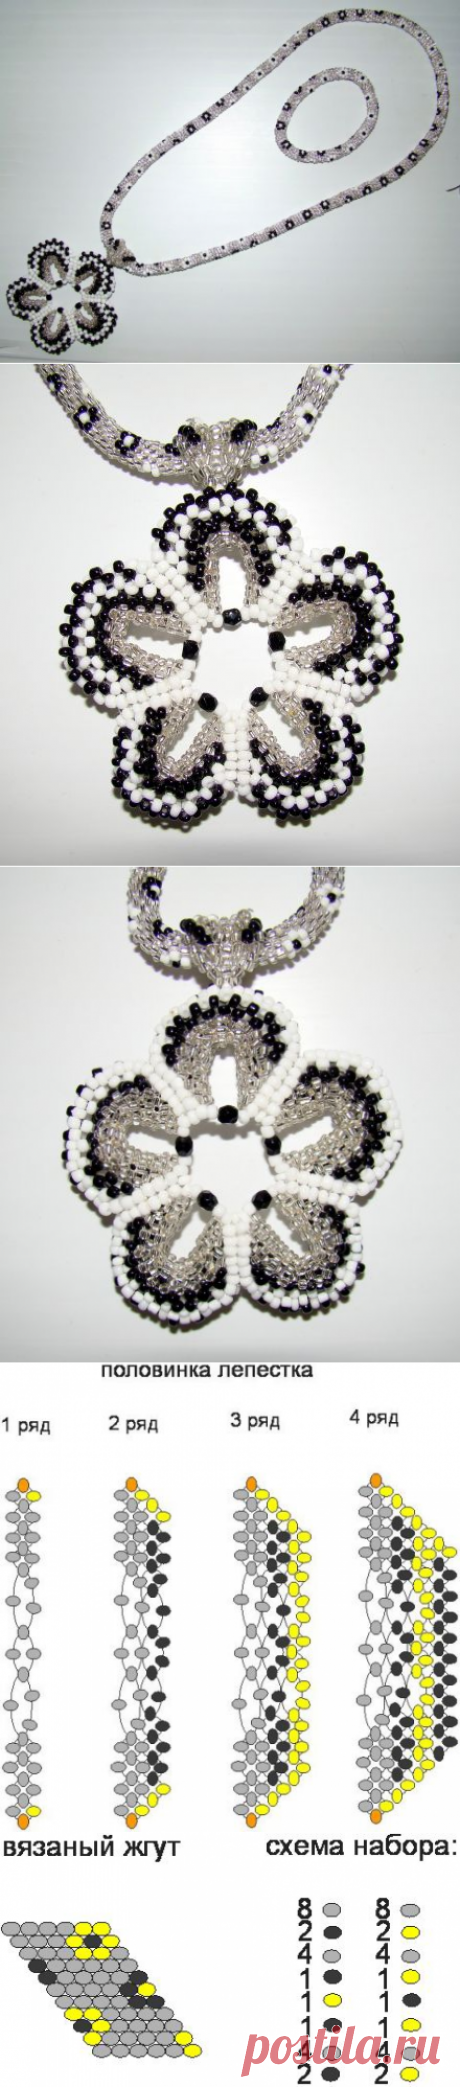 Кулона-цветок из китайского бисера | biser.info - всё о бисере и бисерном творчестве